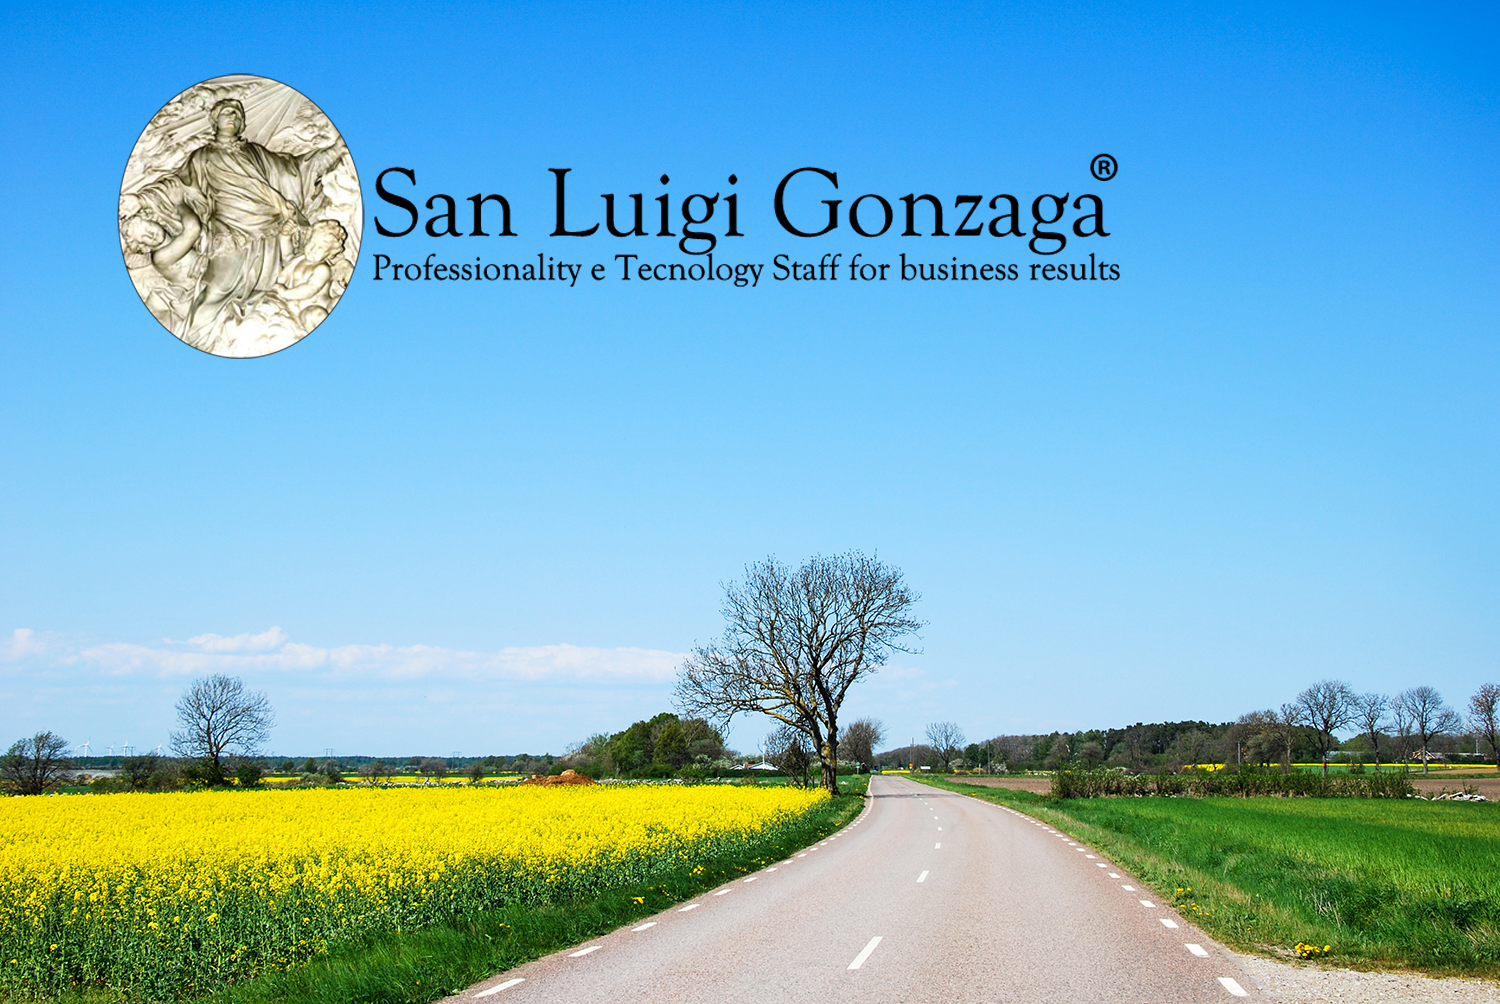 //www.sanluigigonzaga.eu/hyaluwellfast/wp-content/uploads/2021/11/San-Luigi-Gonzaga-Sostenibilita-ambientale.png